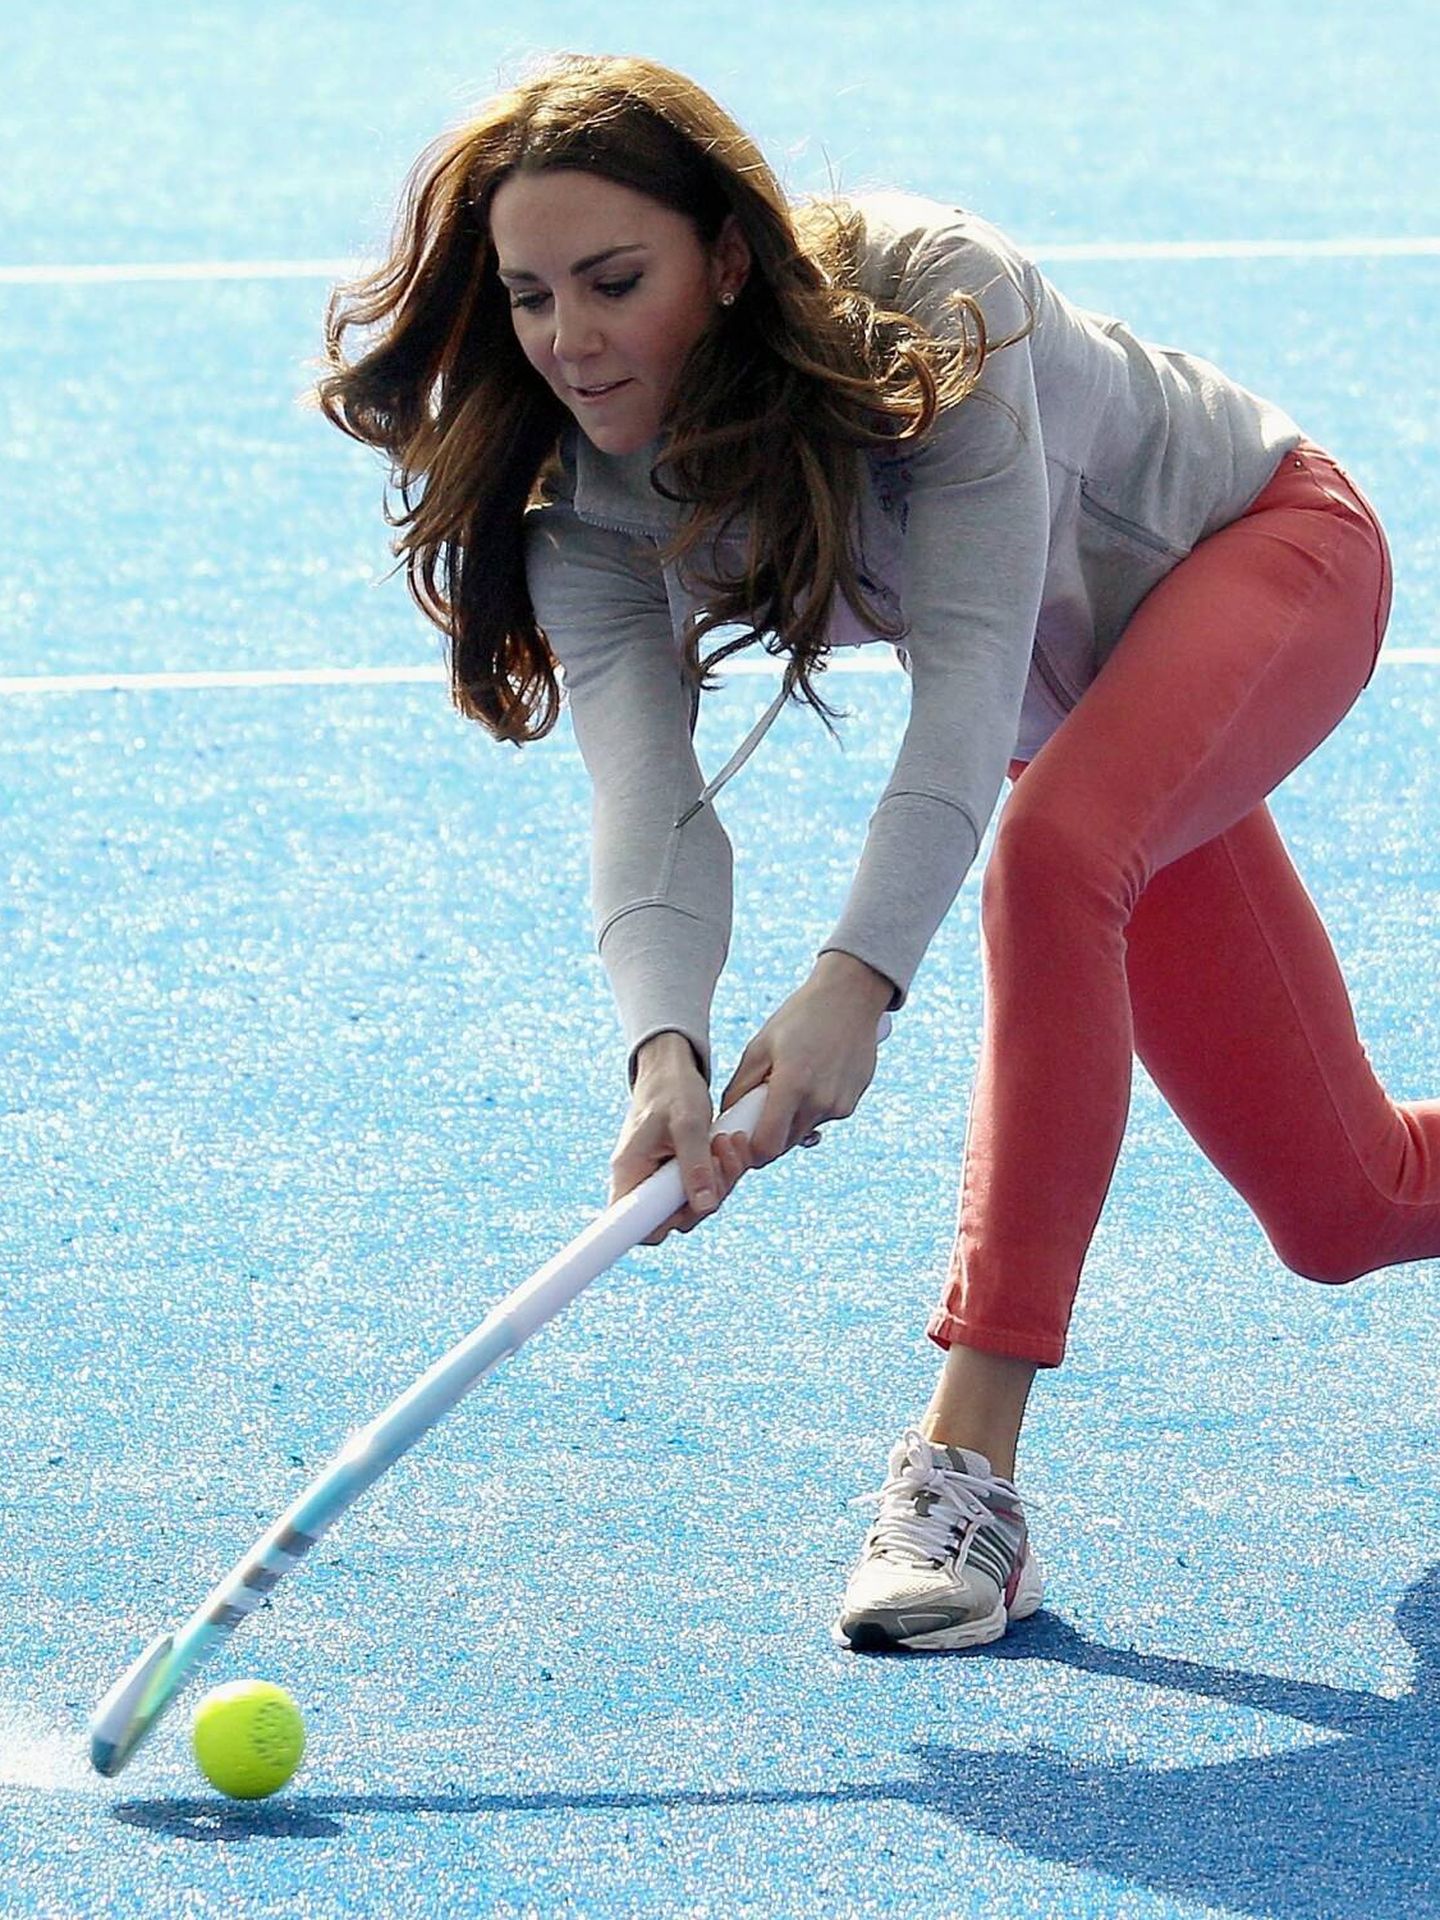 La duquesa, jugando a hockey. (CP)